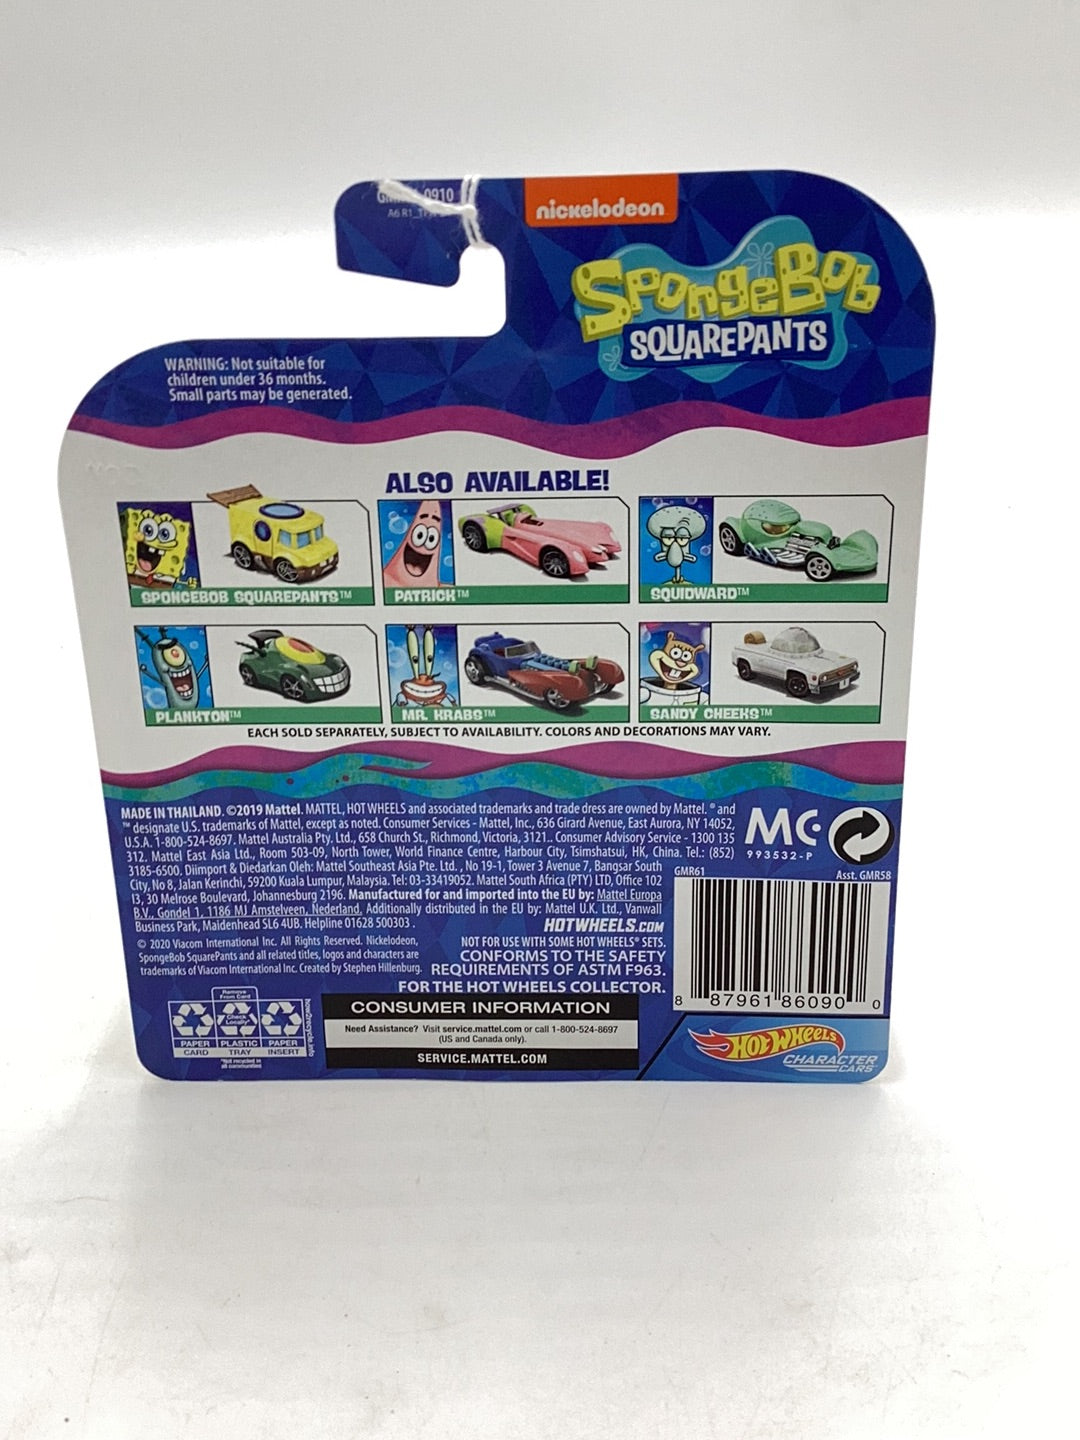 Hot Wheels Nickelodeon Character Cars Patrick 2/6 112D